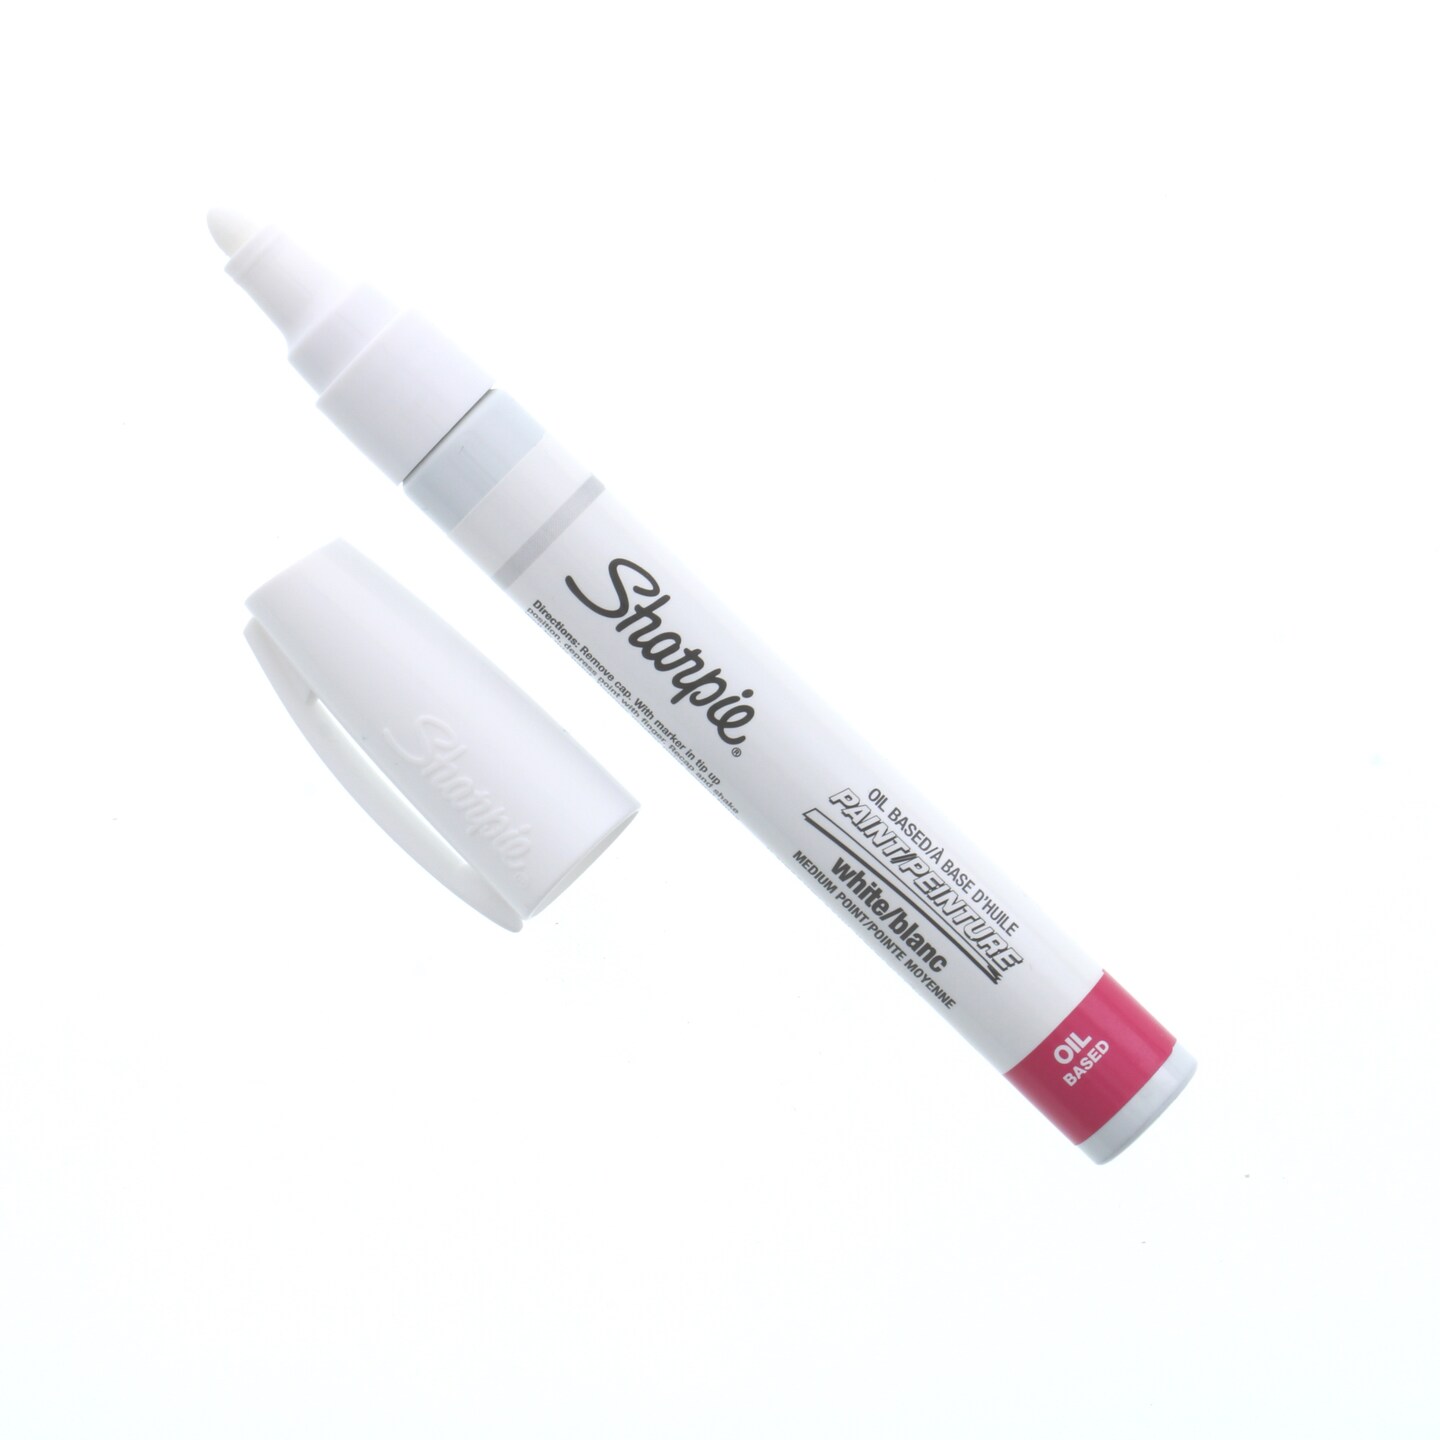 Sharpie Oil-Based Paint Marker - Medium Point - White